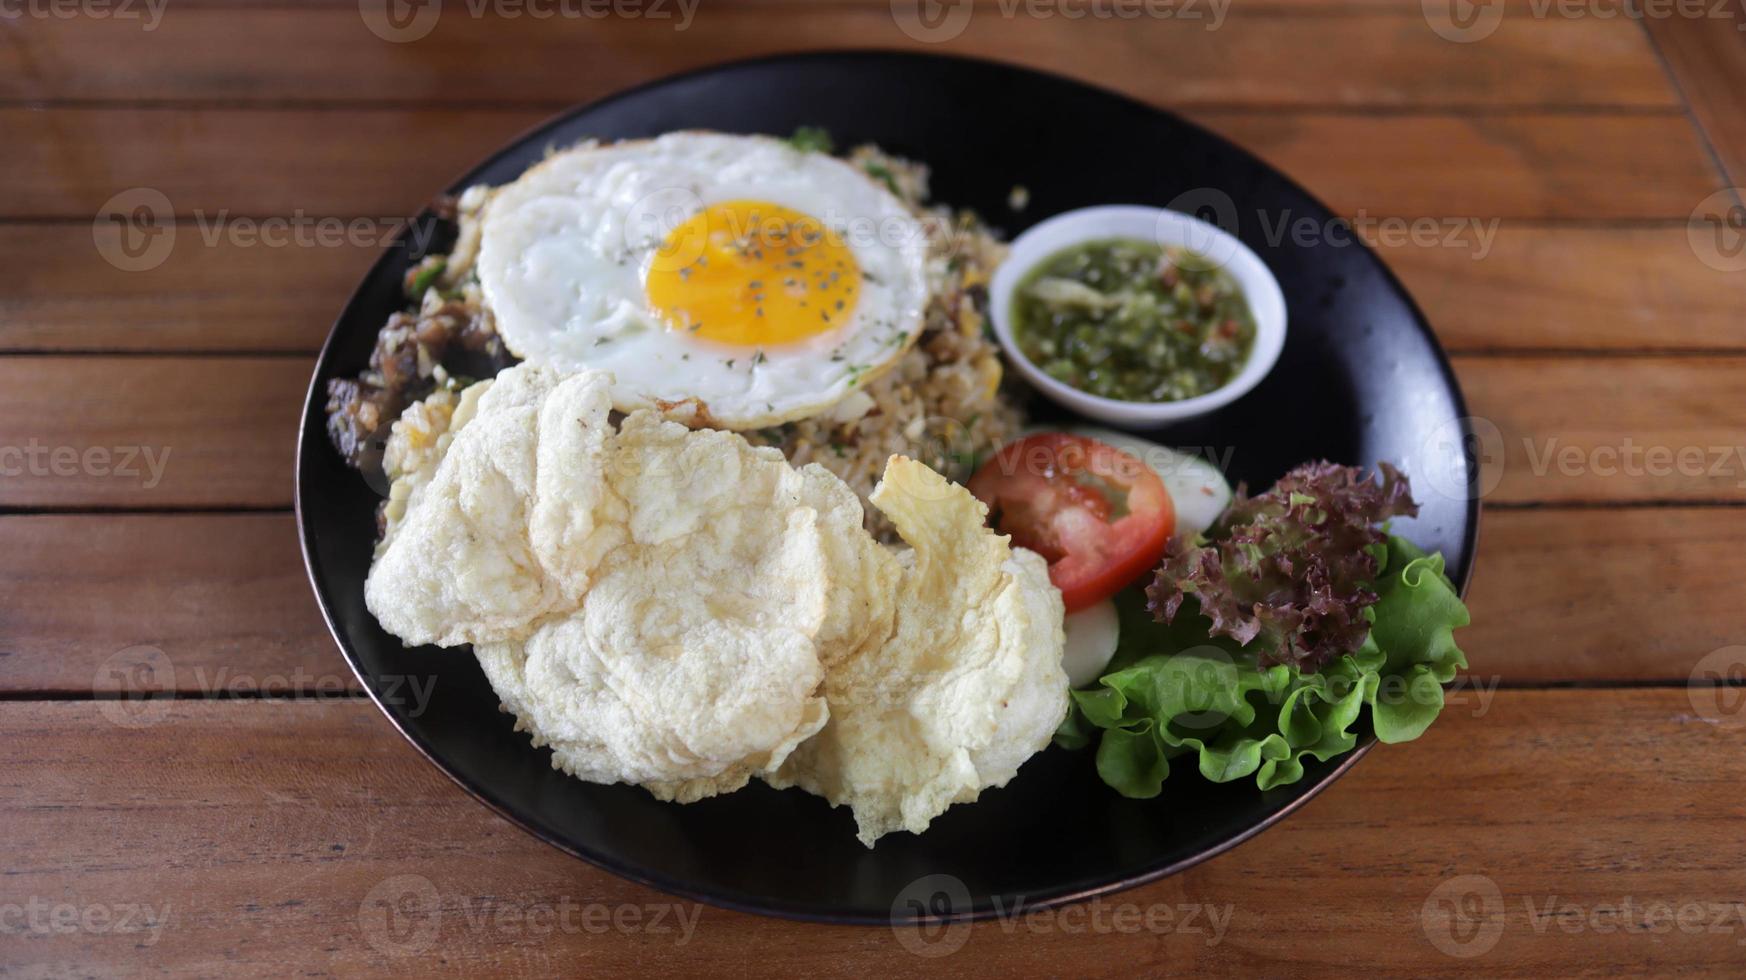 Vila frito arroz ou nasi Goreng Kampung fez com grande quantidade do coberturas, tomate, frito ovo, nítido, e especial oleado amassar Pimenta alguns fresco vegetal. foto